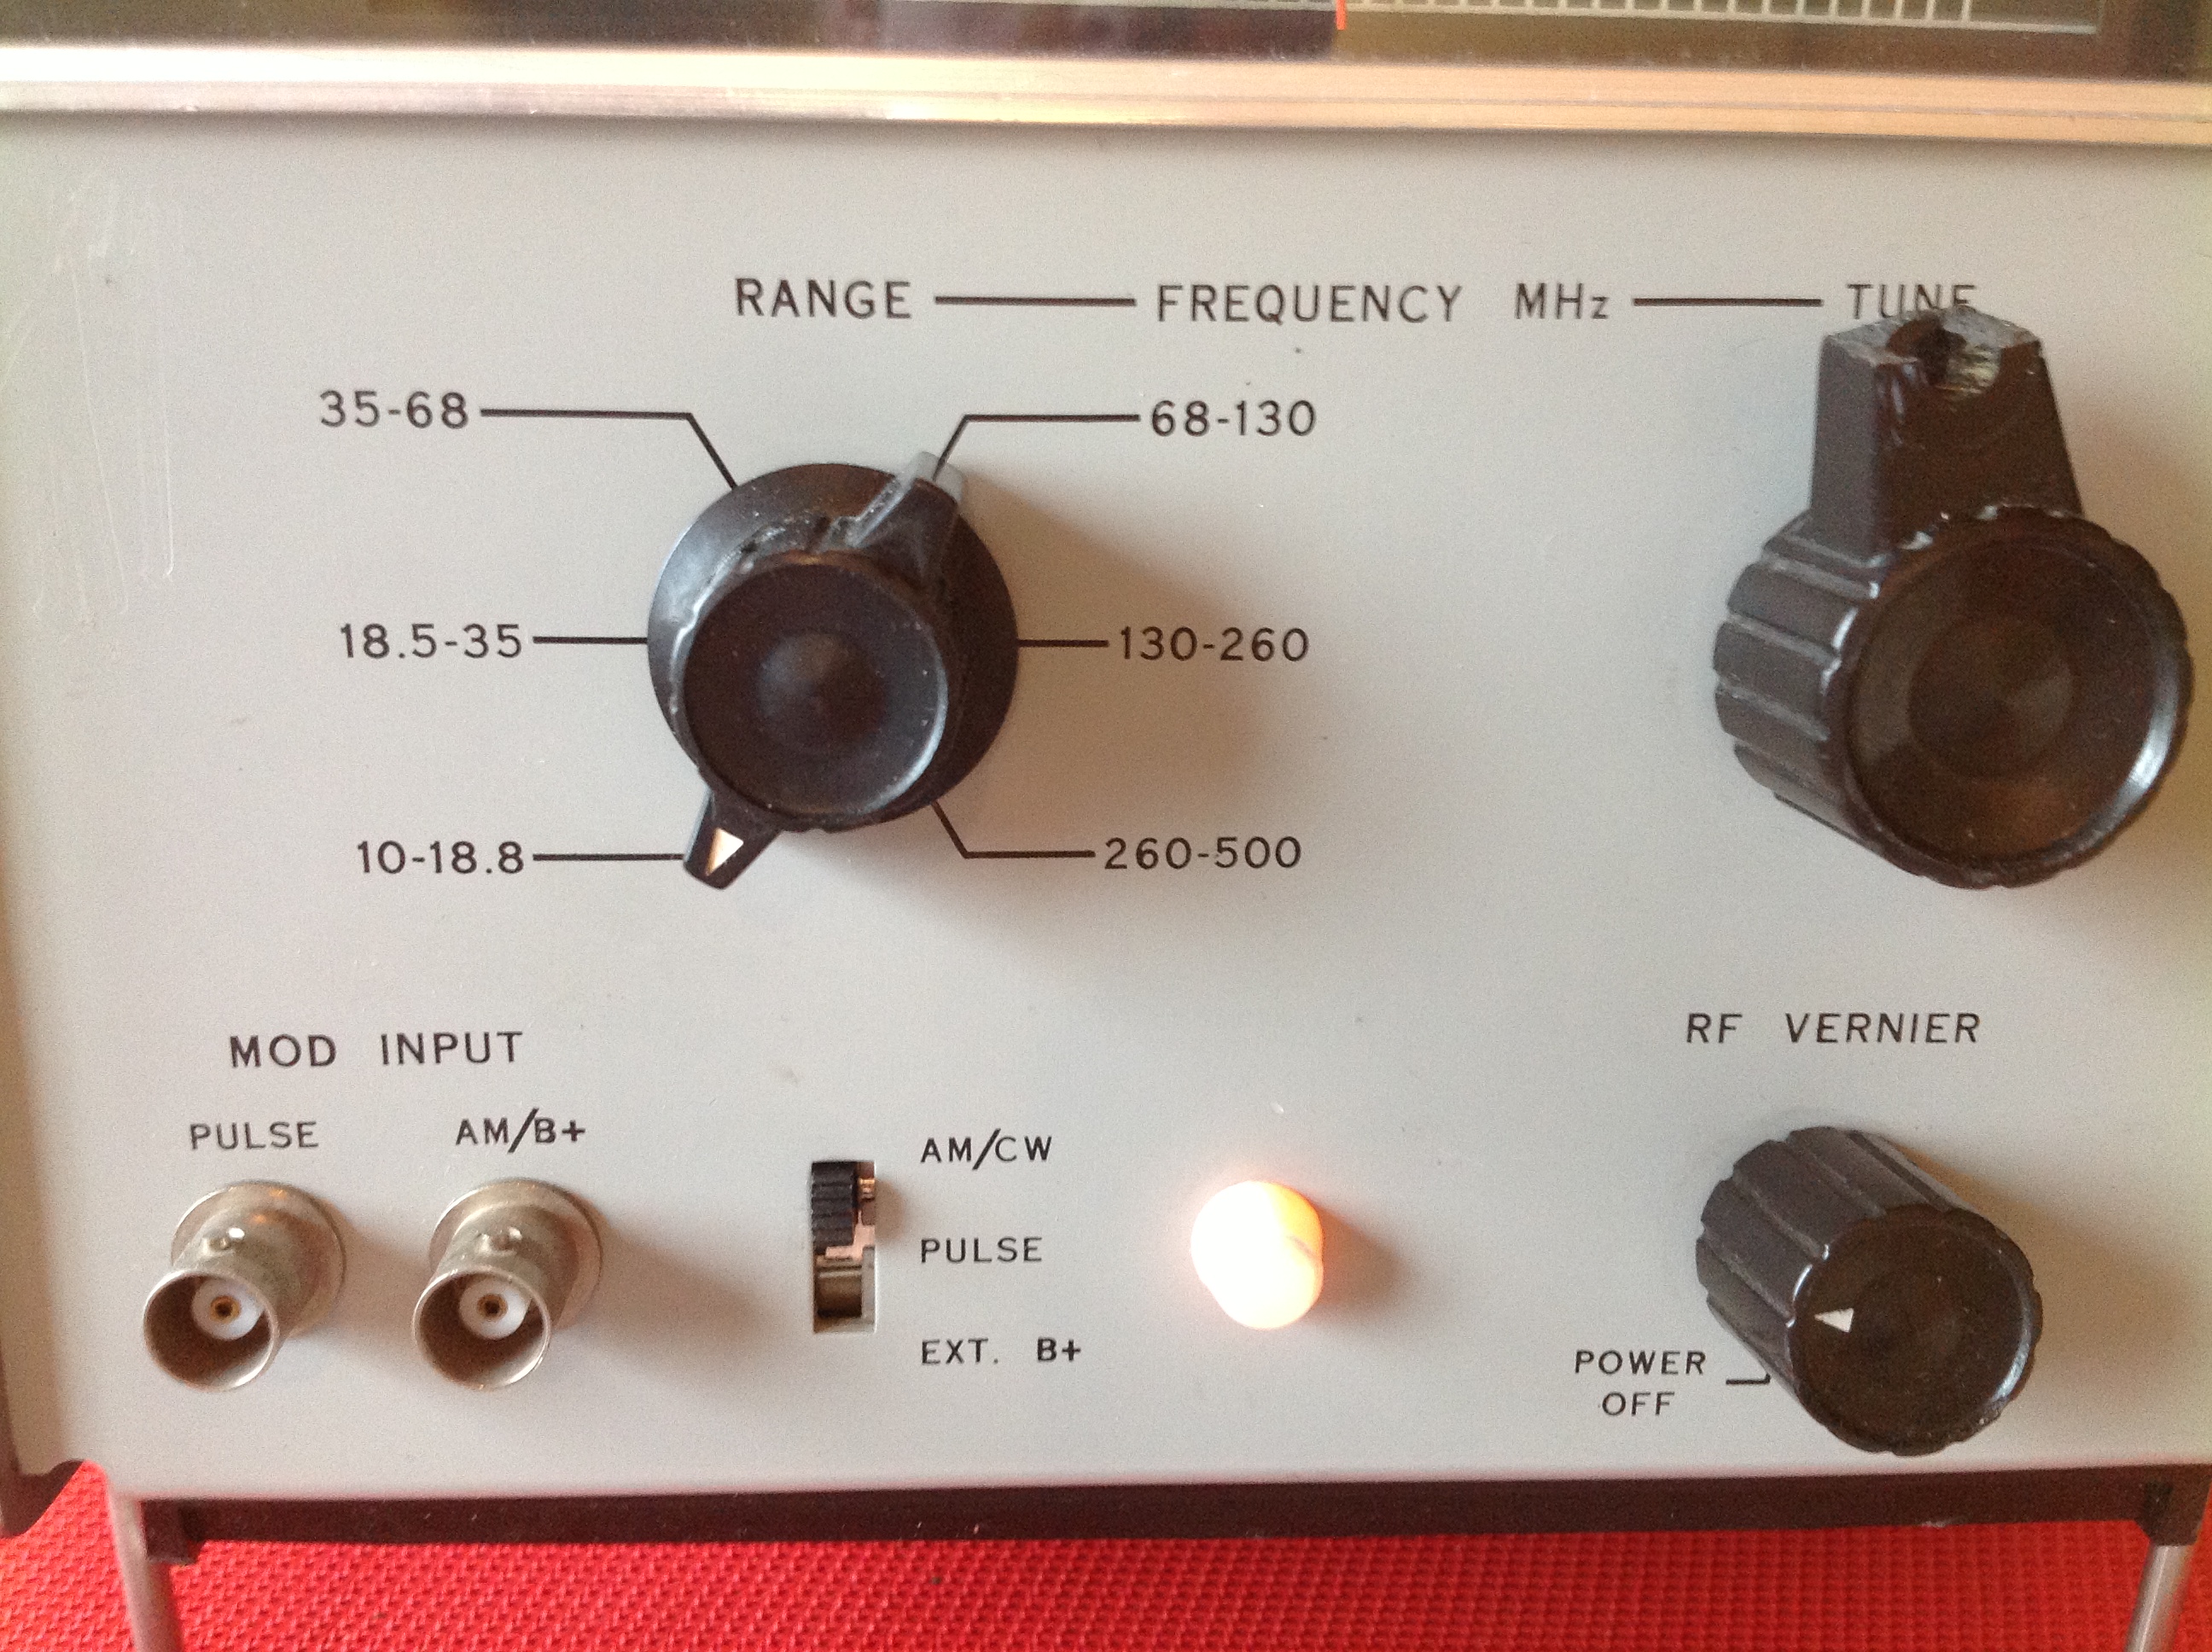 Hewlett Packard VHF Oscillator 3200B